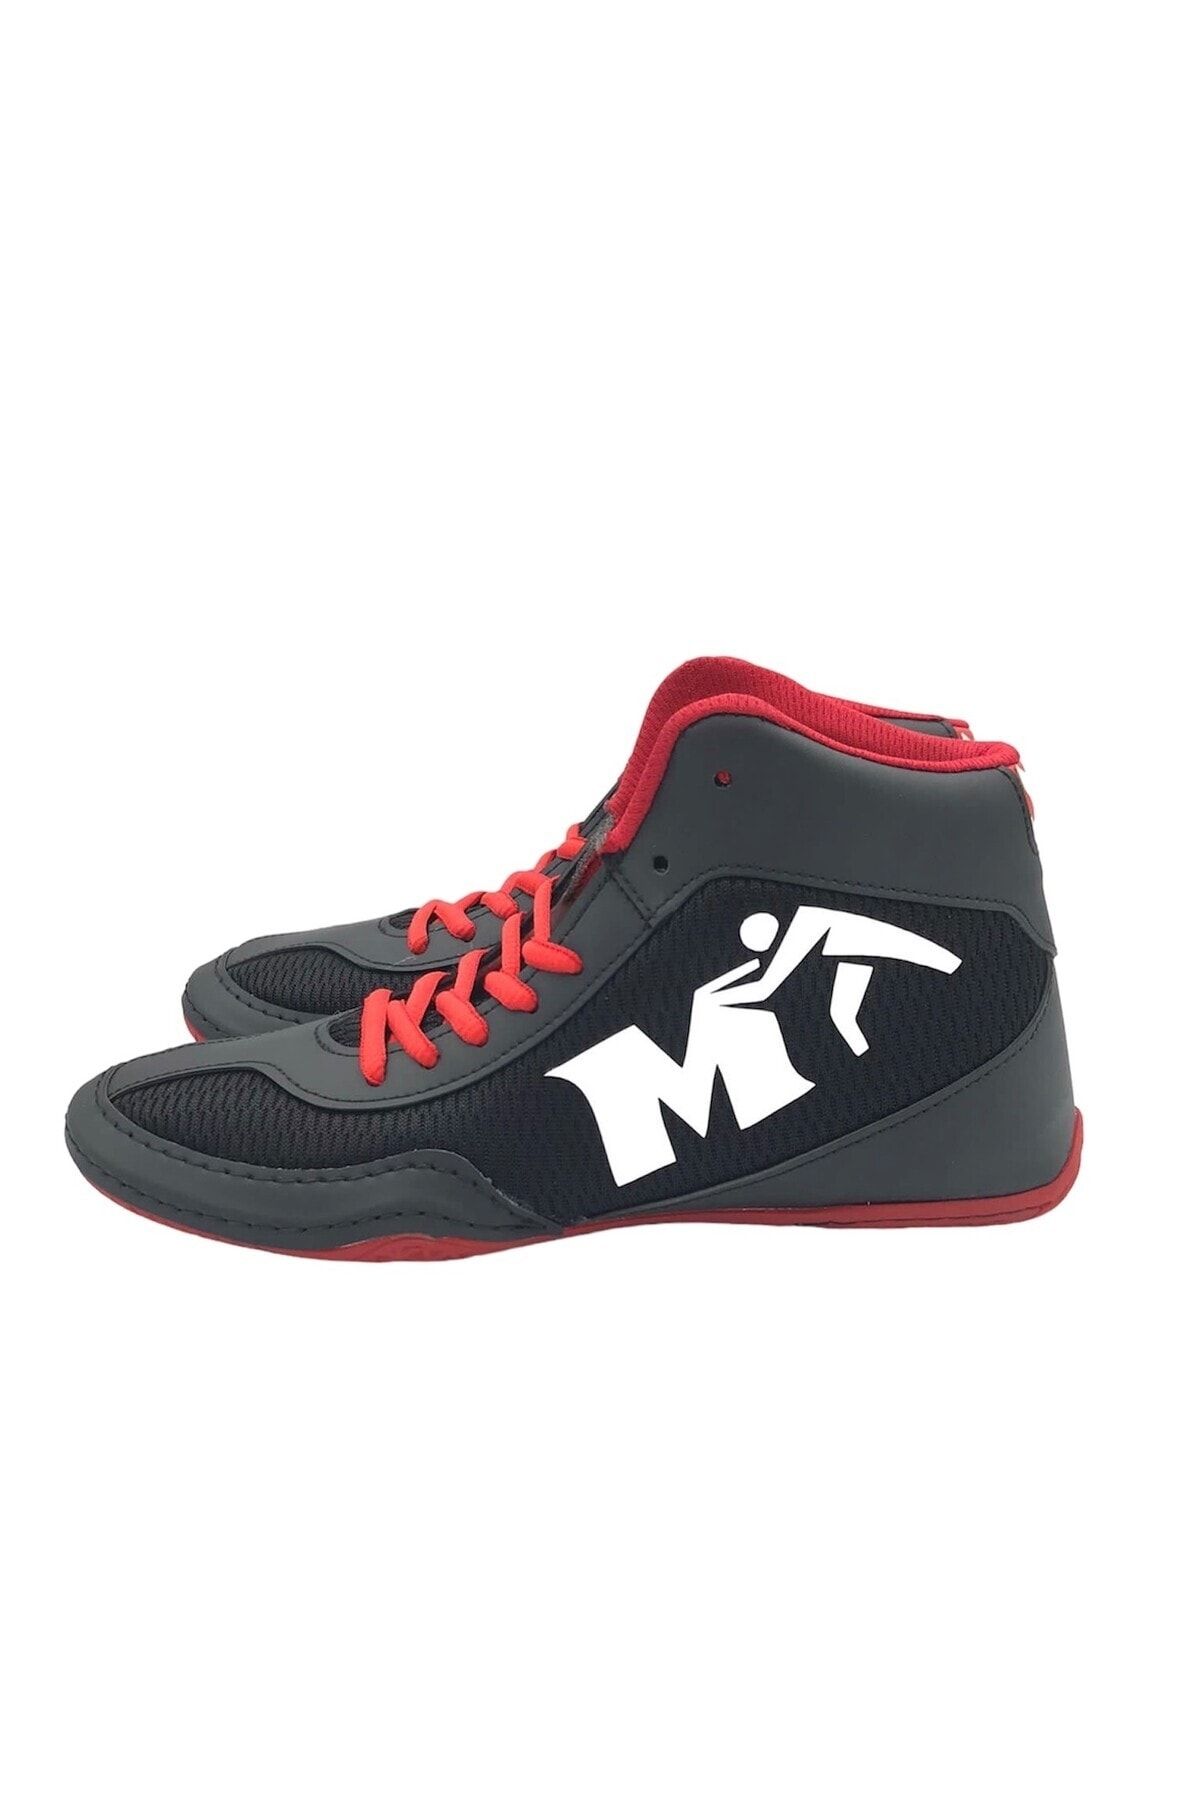 More Sports More Güreş Ayakkabısı Siyah-Kırmızı